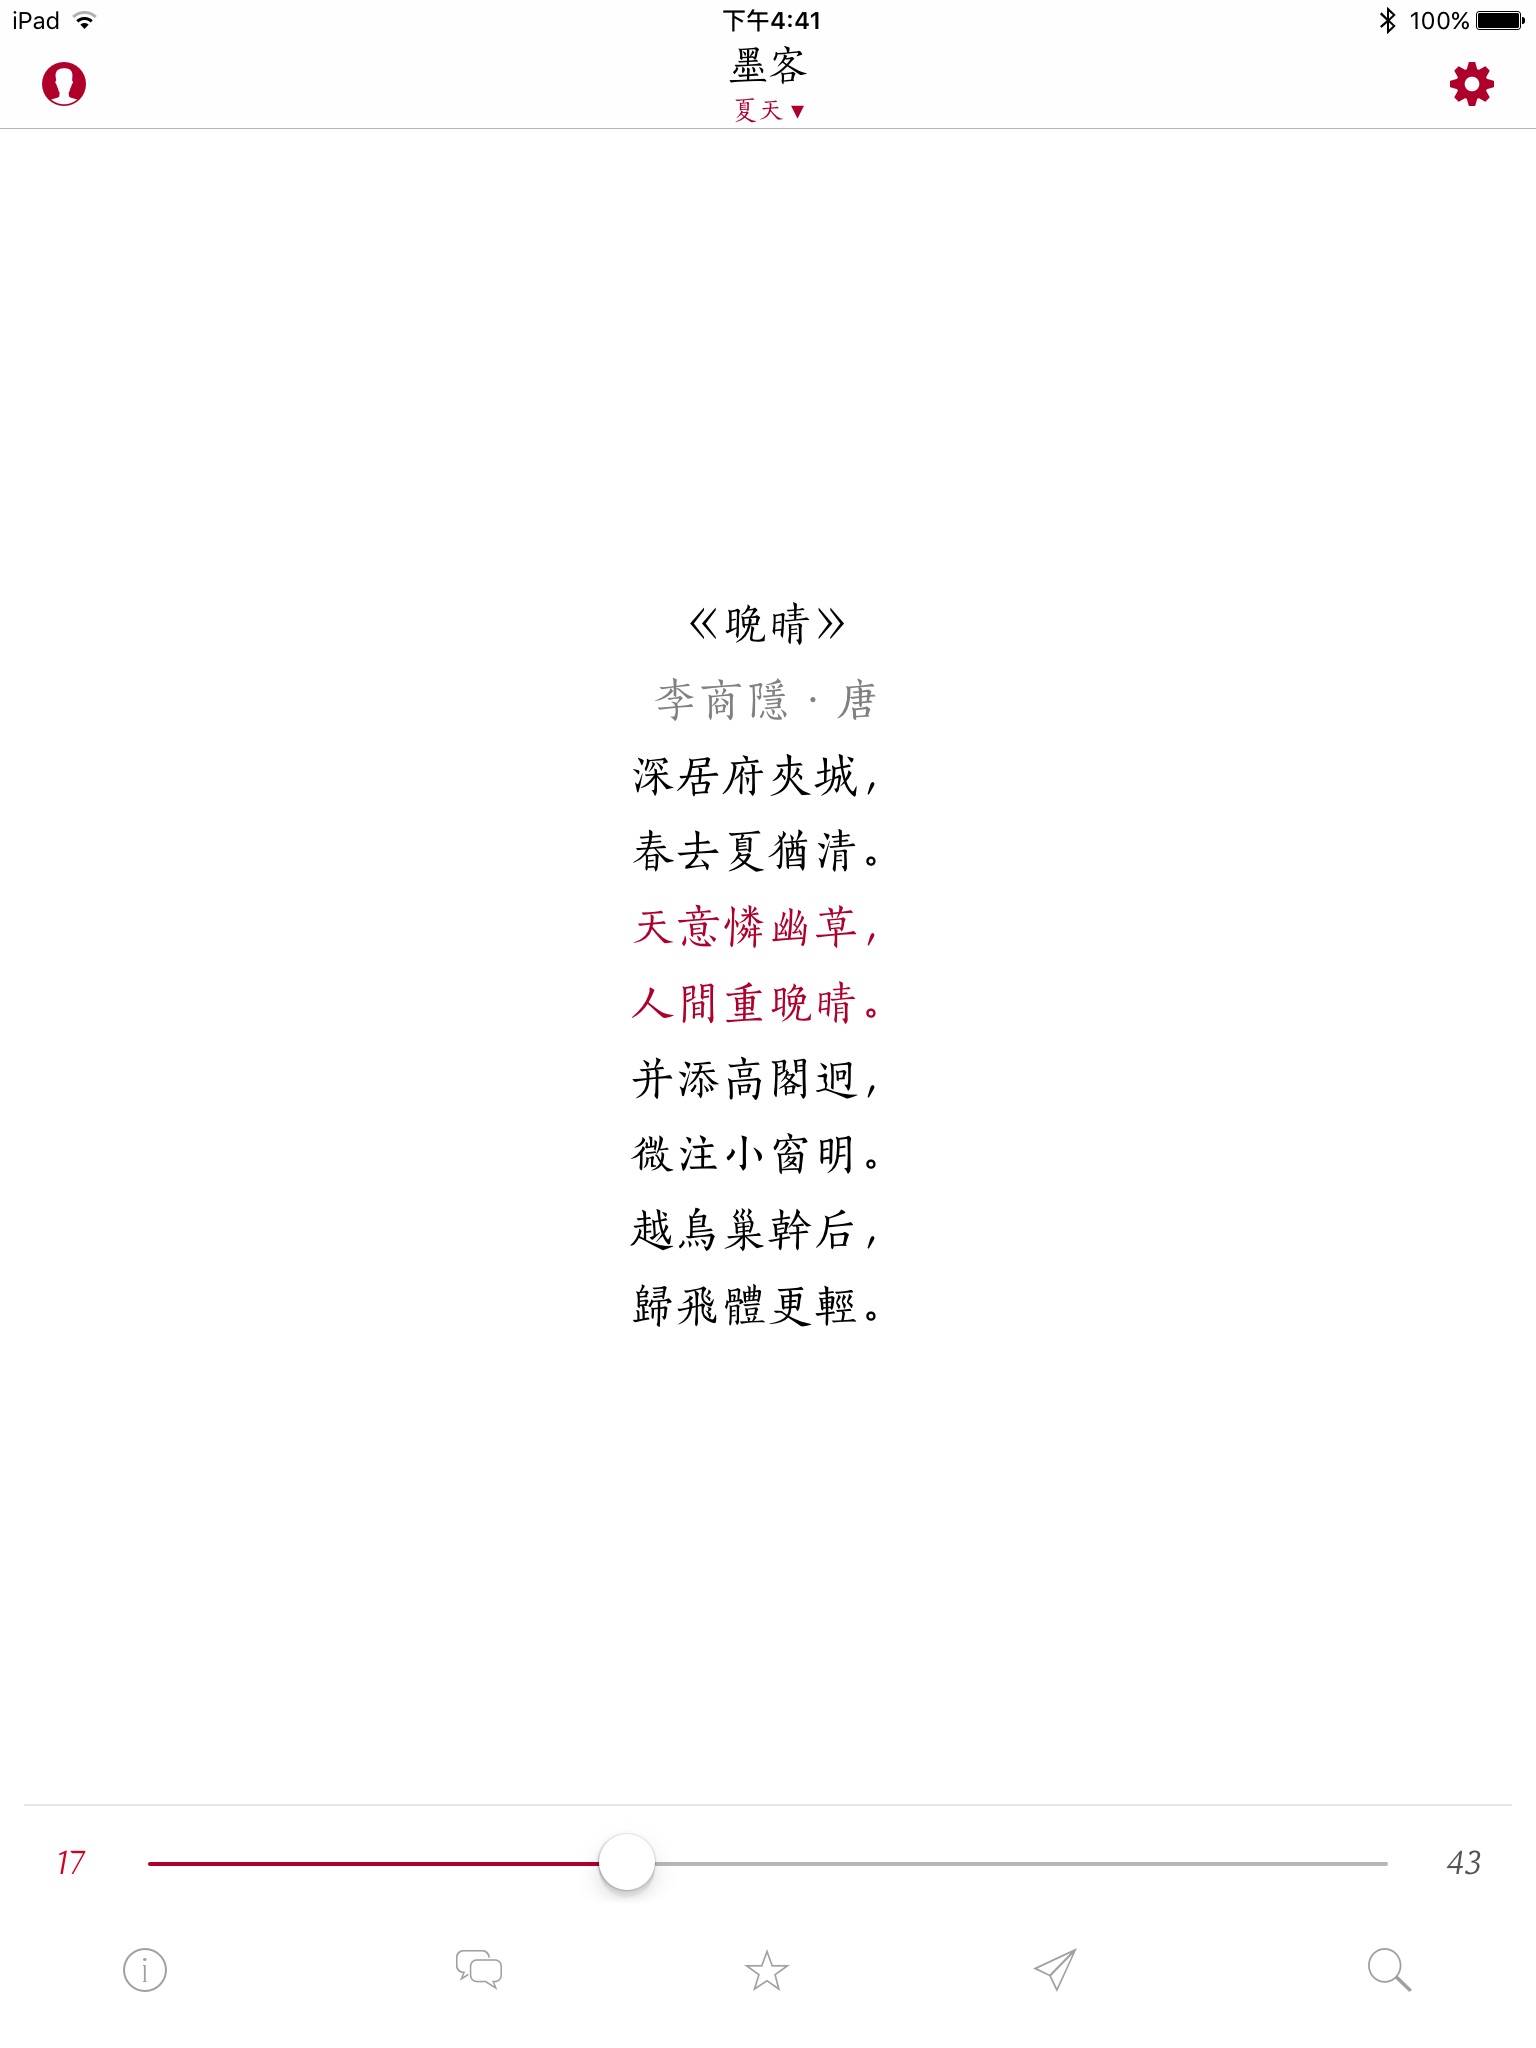 墨客 · 诗 Pro - 传承中国传统文化 screenshot 2